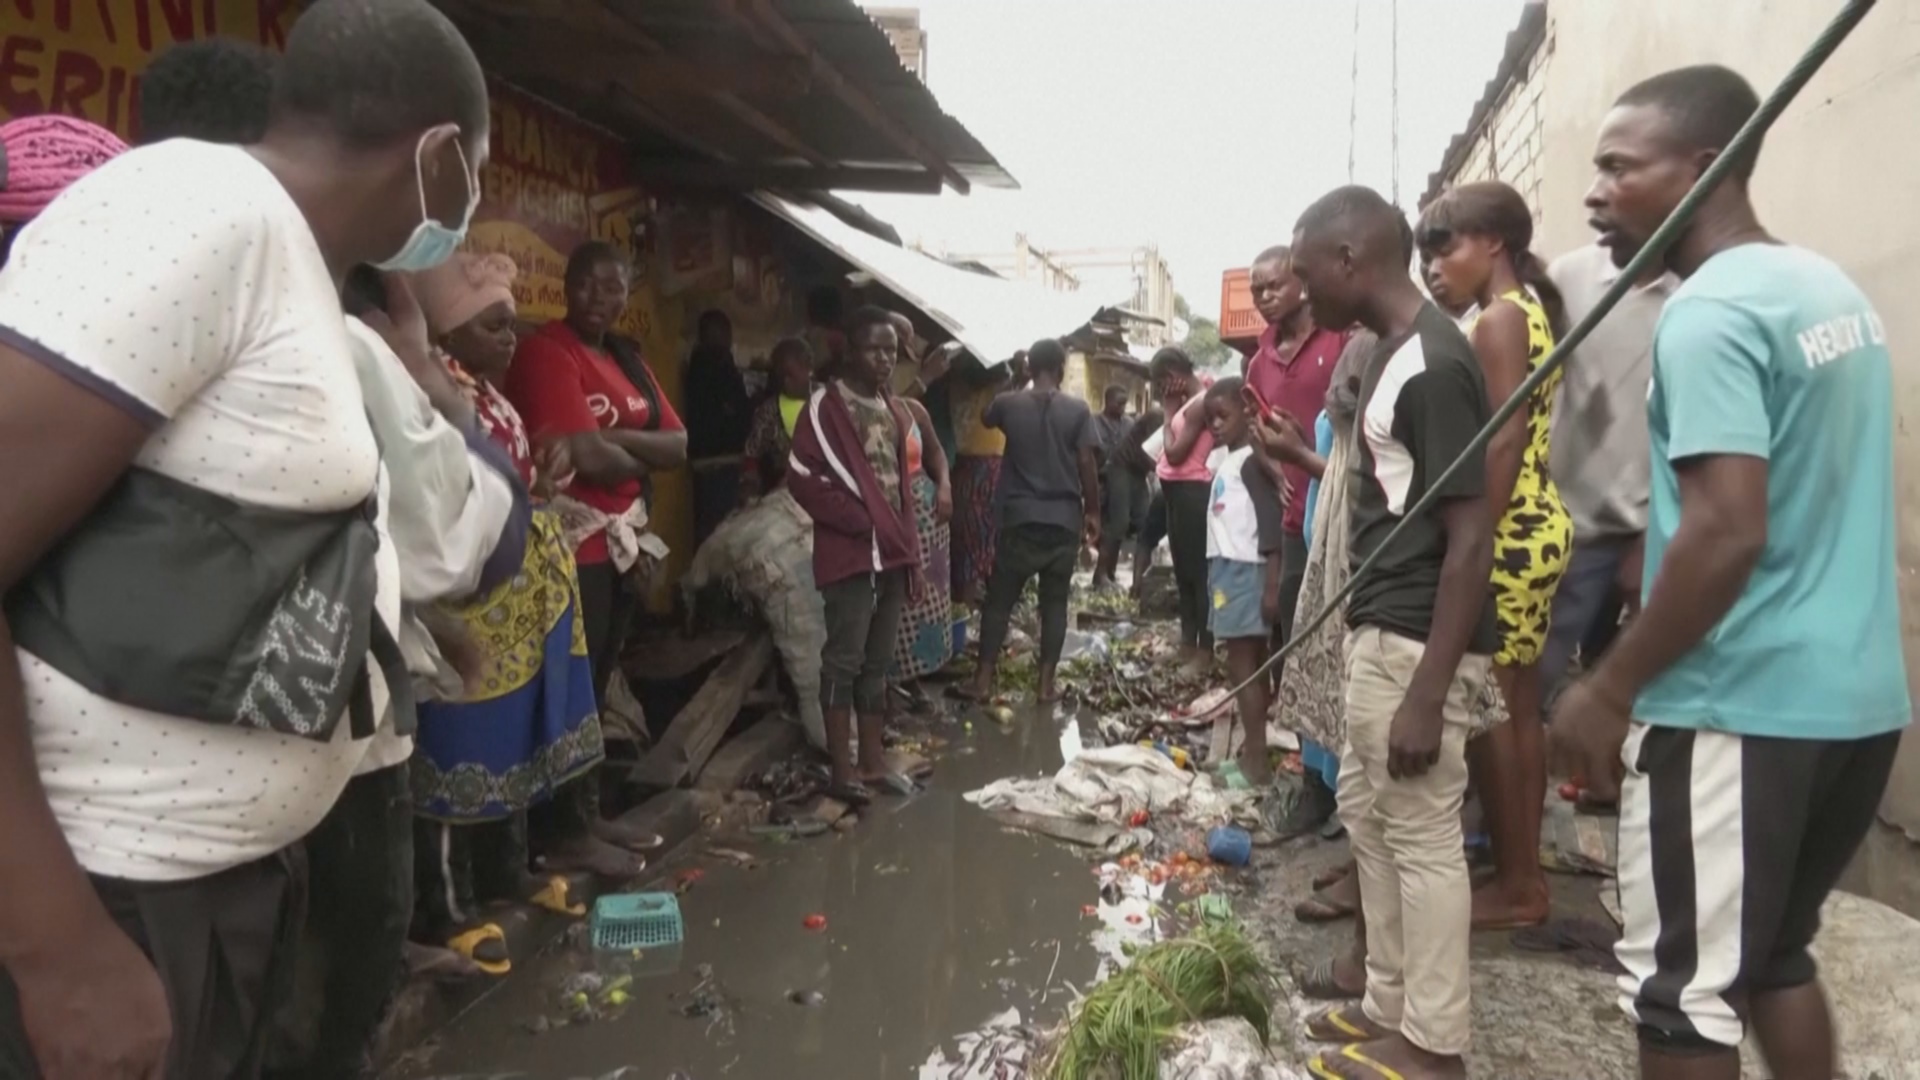 Трагедия на рынке в ДР Конго: продавцов убило током